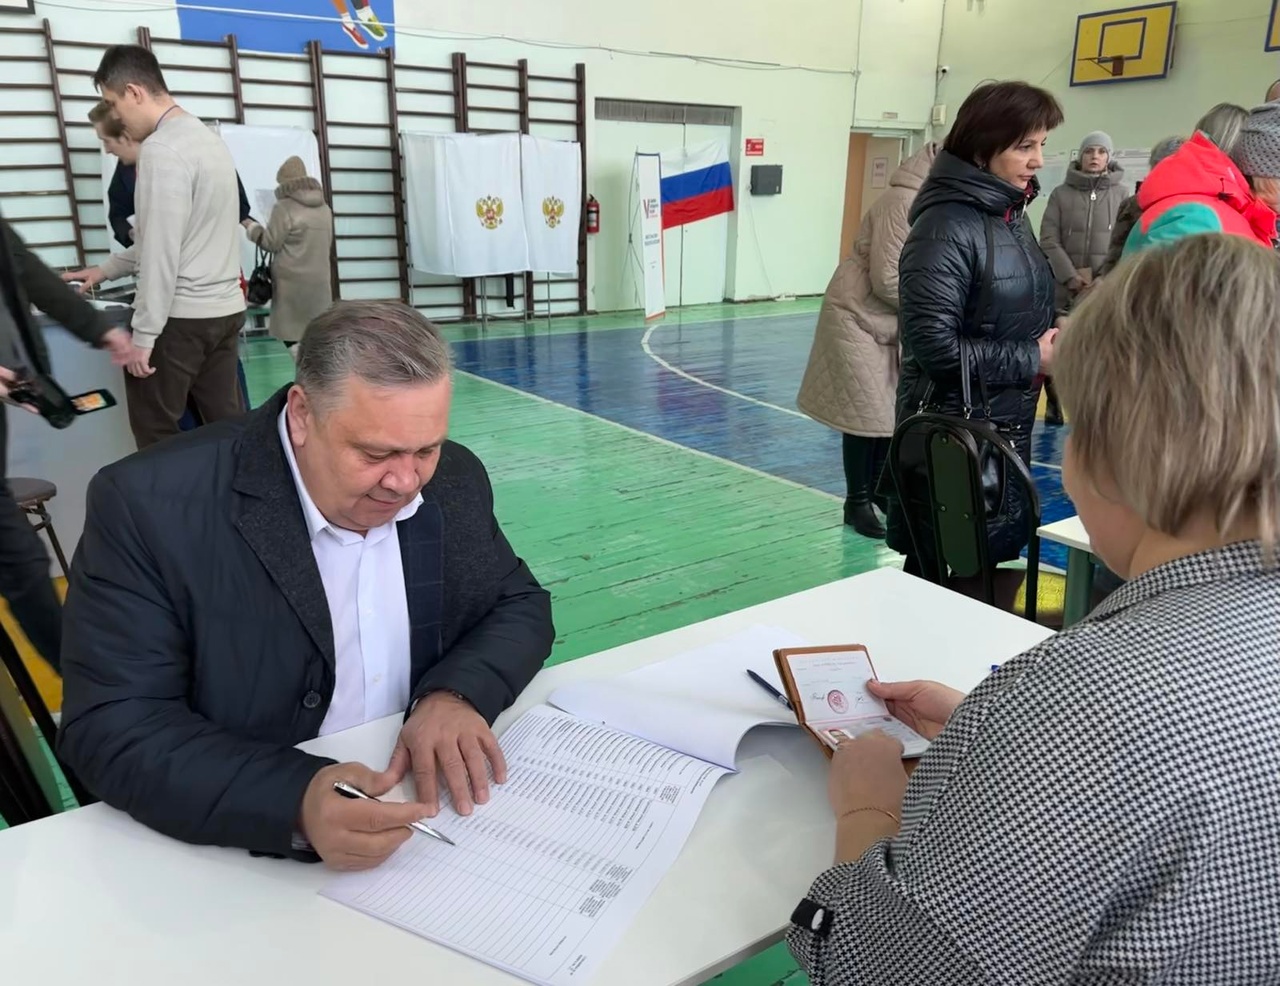 Глава города Сергей Сандрюков сегодняшнее утро начал с объезда всех избирательных участков и проголосовал на своём УИКе 3247.